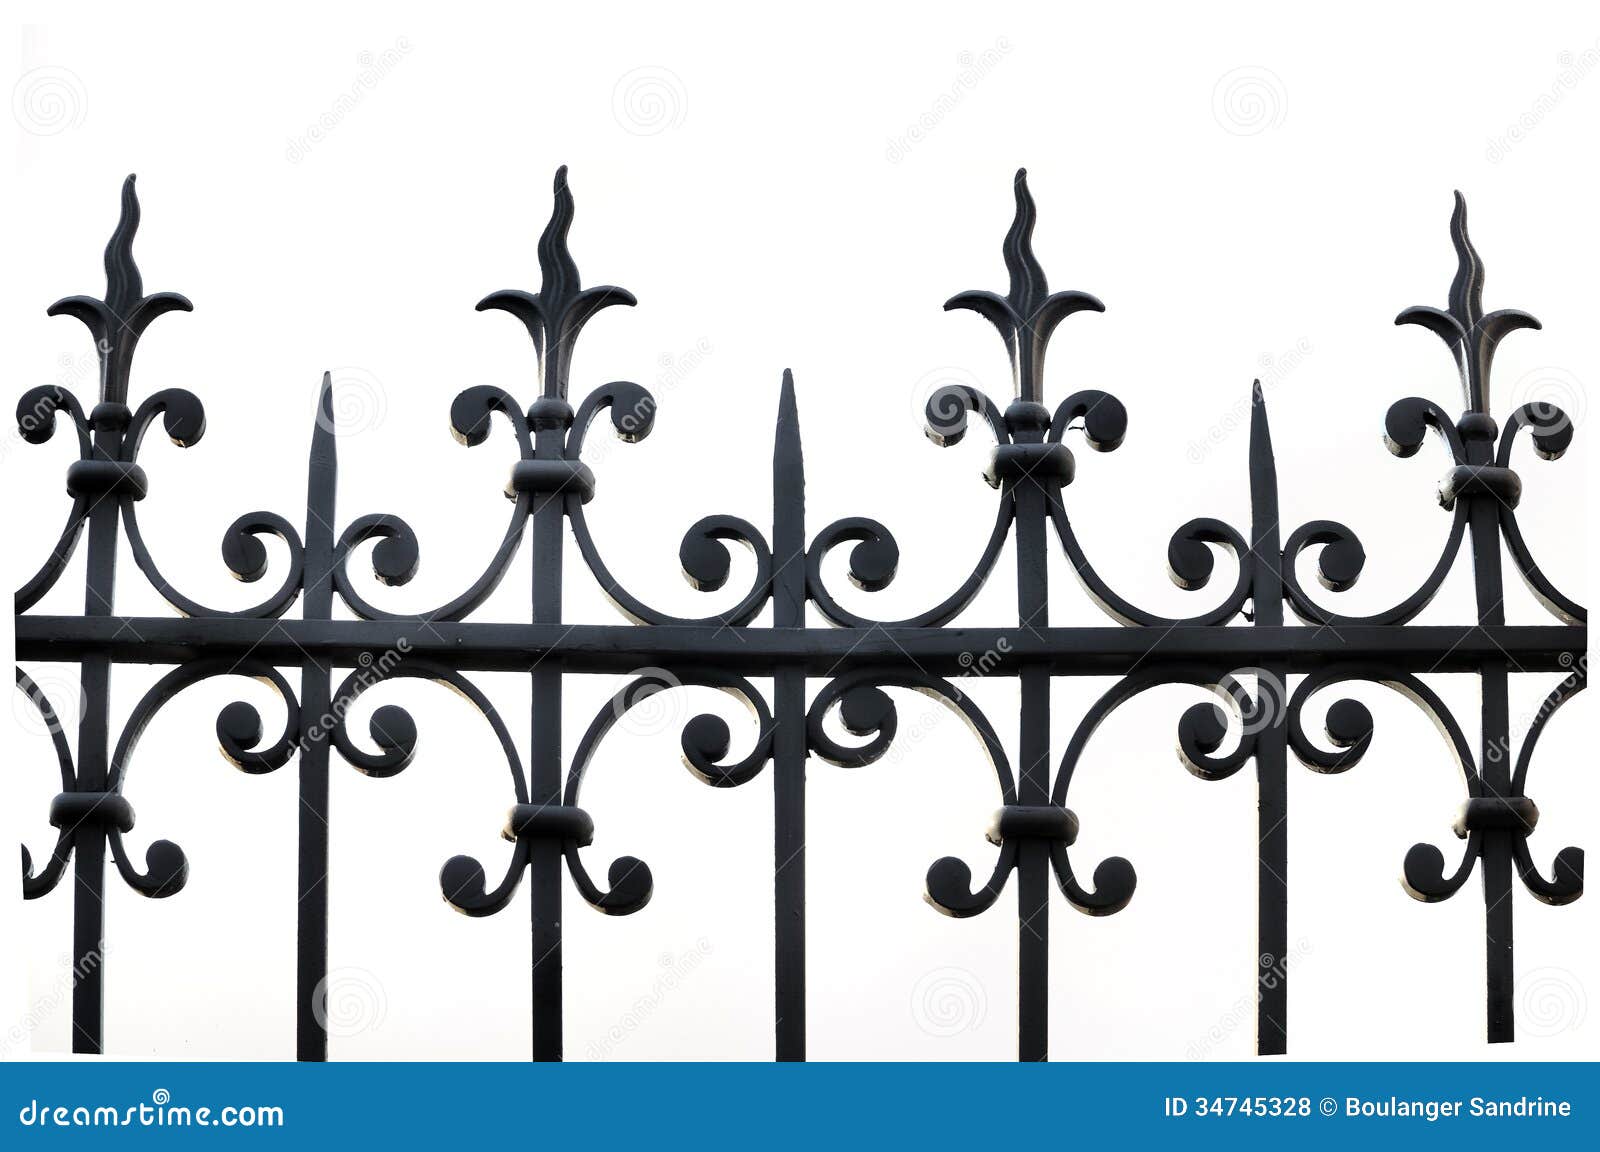 clipart iron gates - photo #40